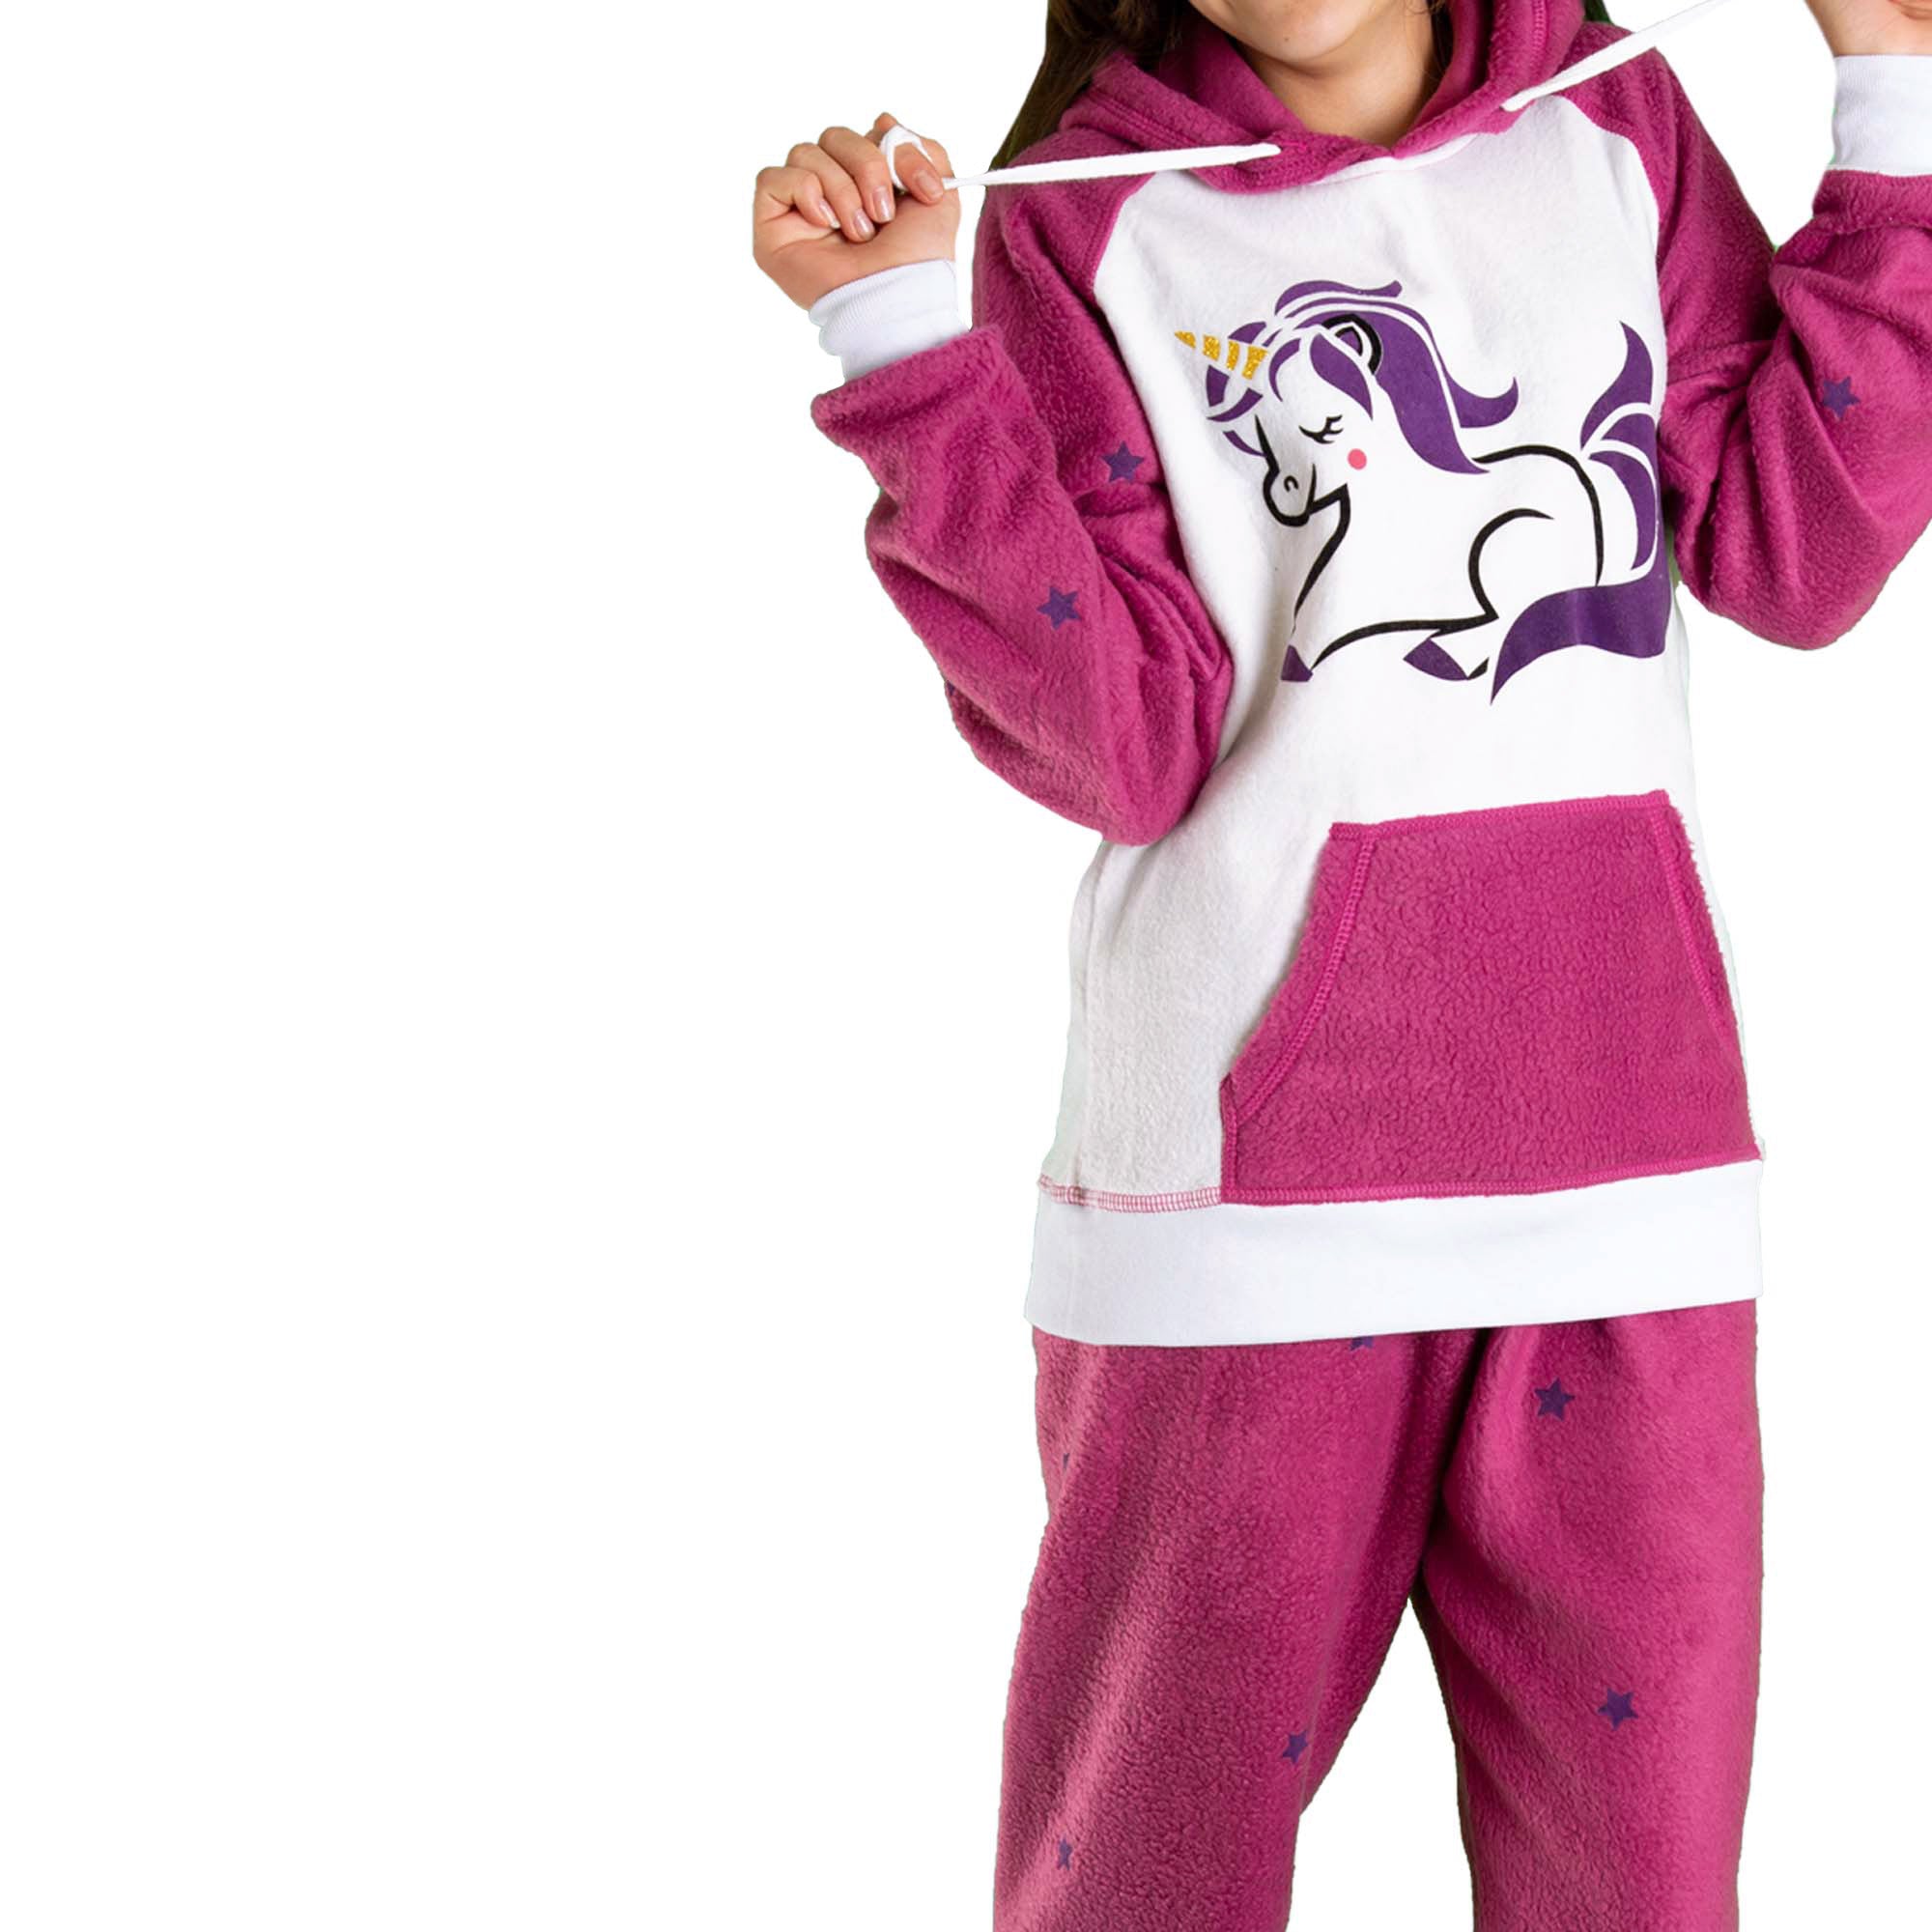 Detalle de Niña vistiendo la Pijama para Niñas Fuxia y Blanco referencia Unicornio con un lindo unicornio morado con cuerno amarillo en el pecho, diseño de Arctic Fox Colombia